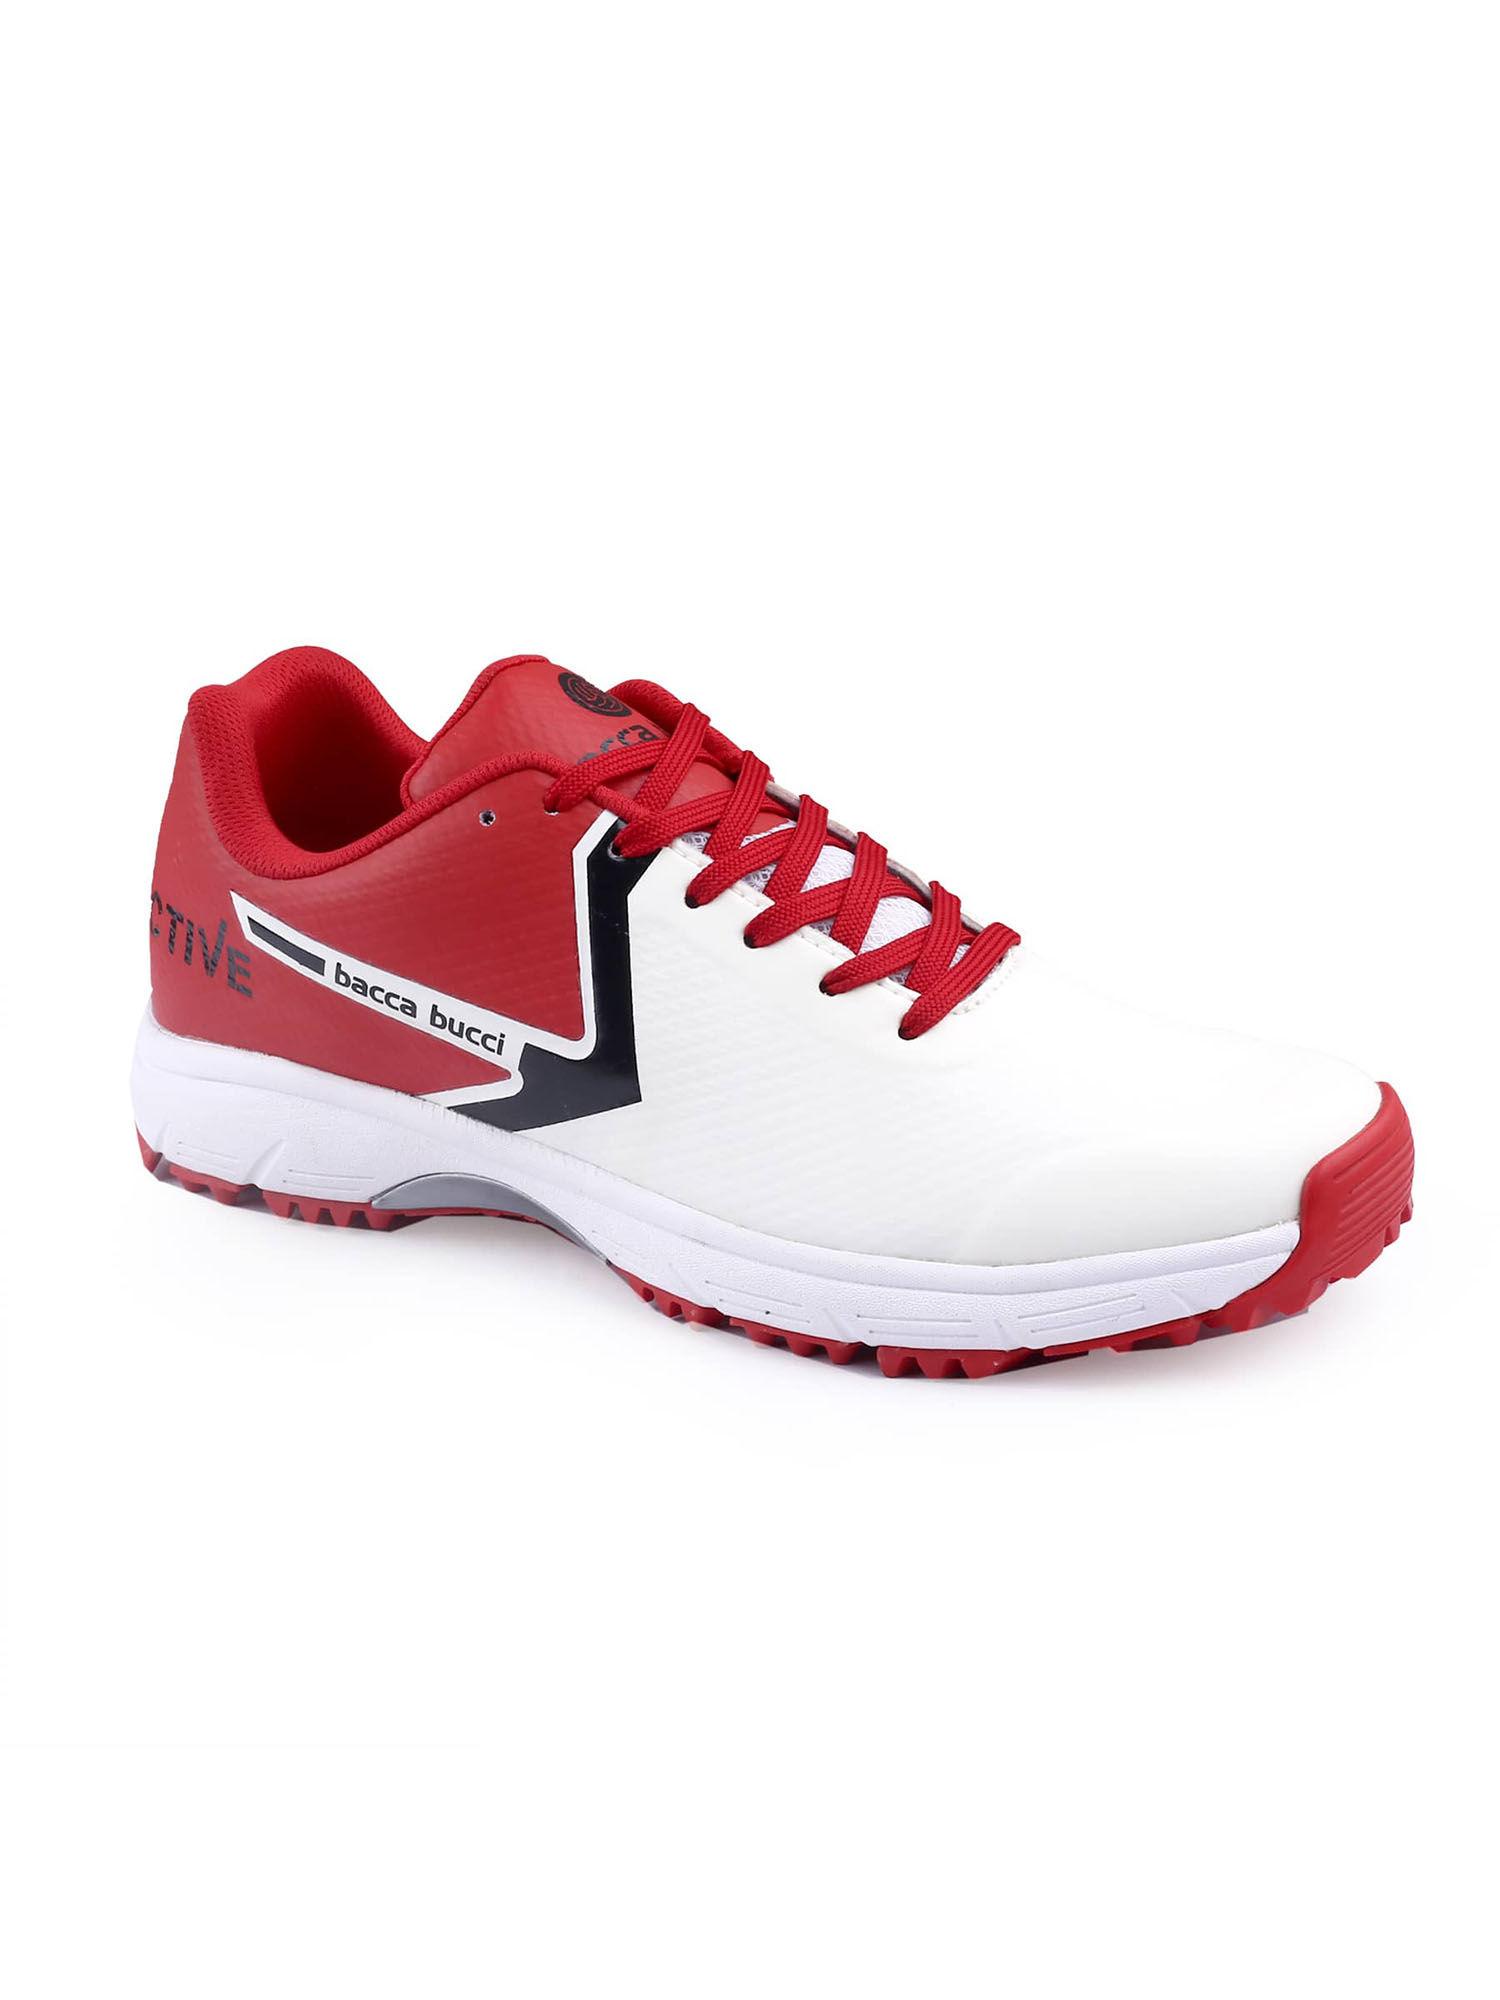 red-neon-strike-pro-futsal-shoes